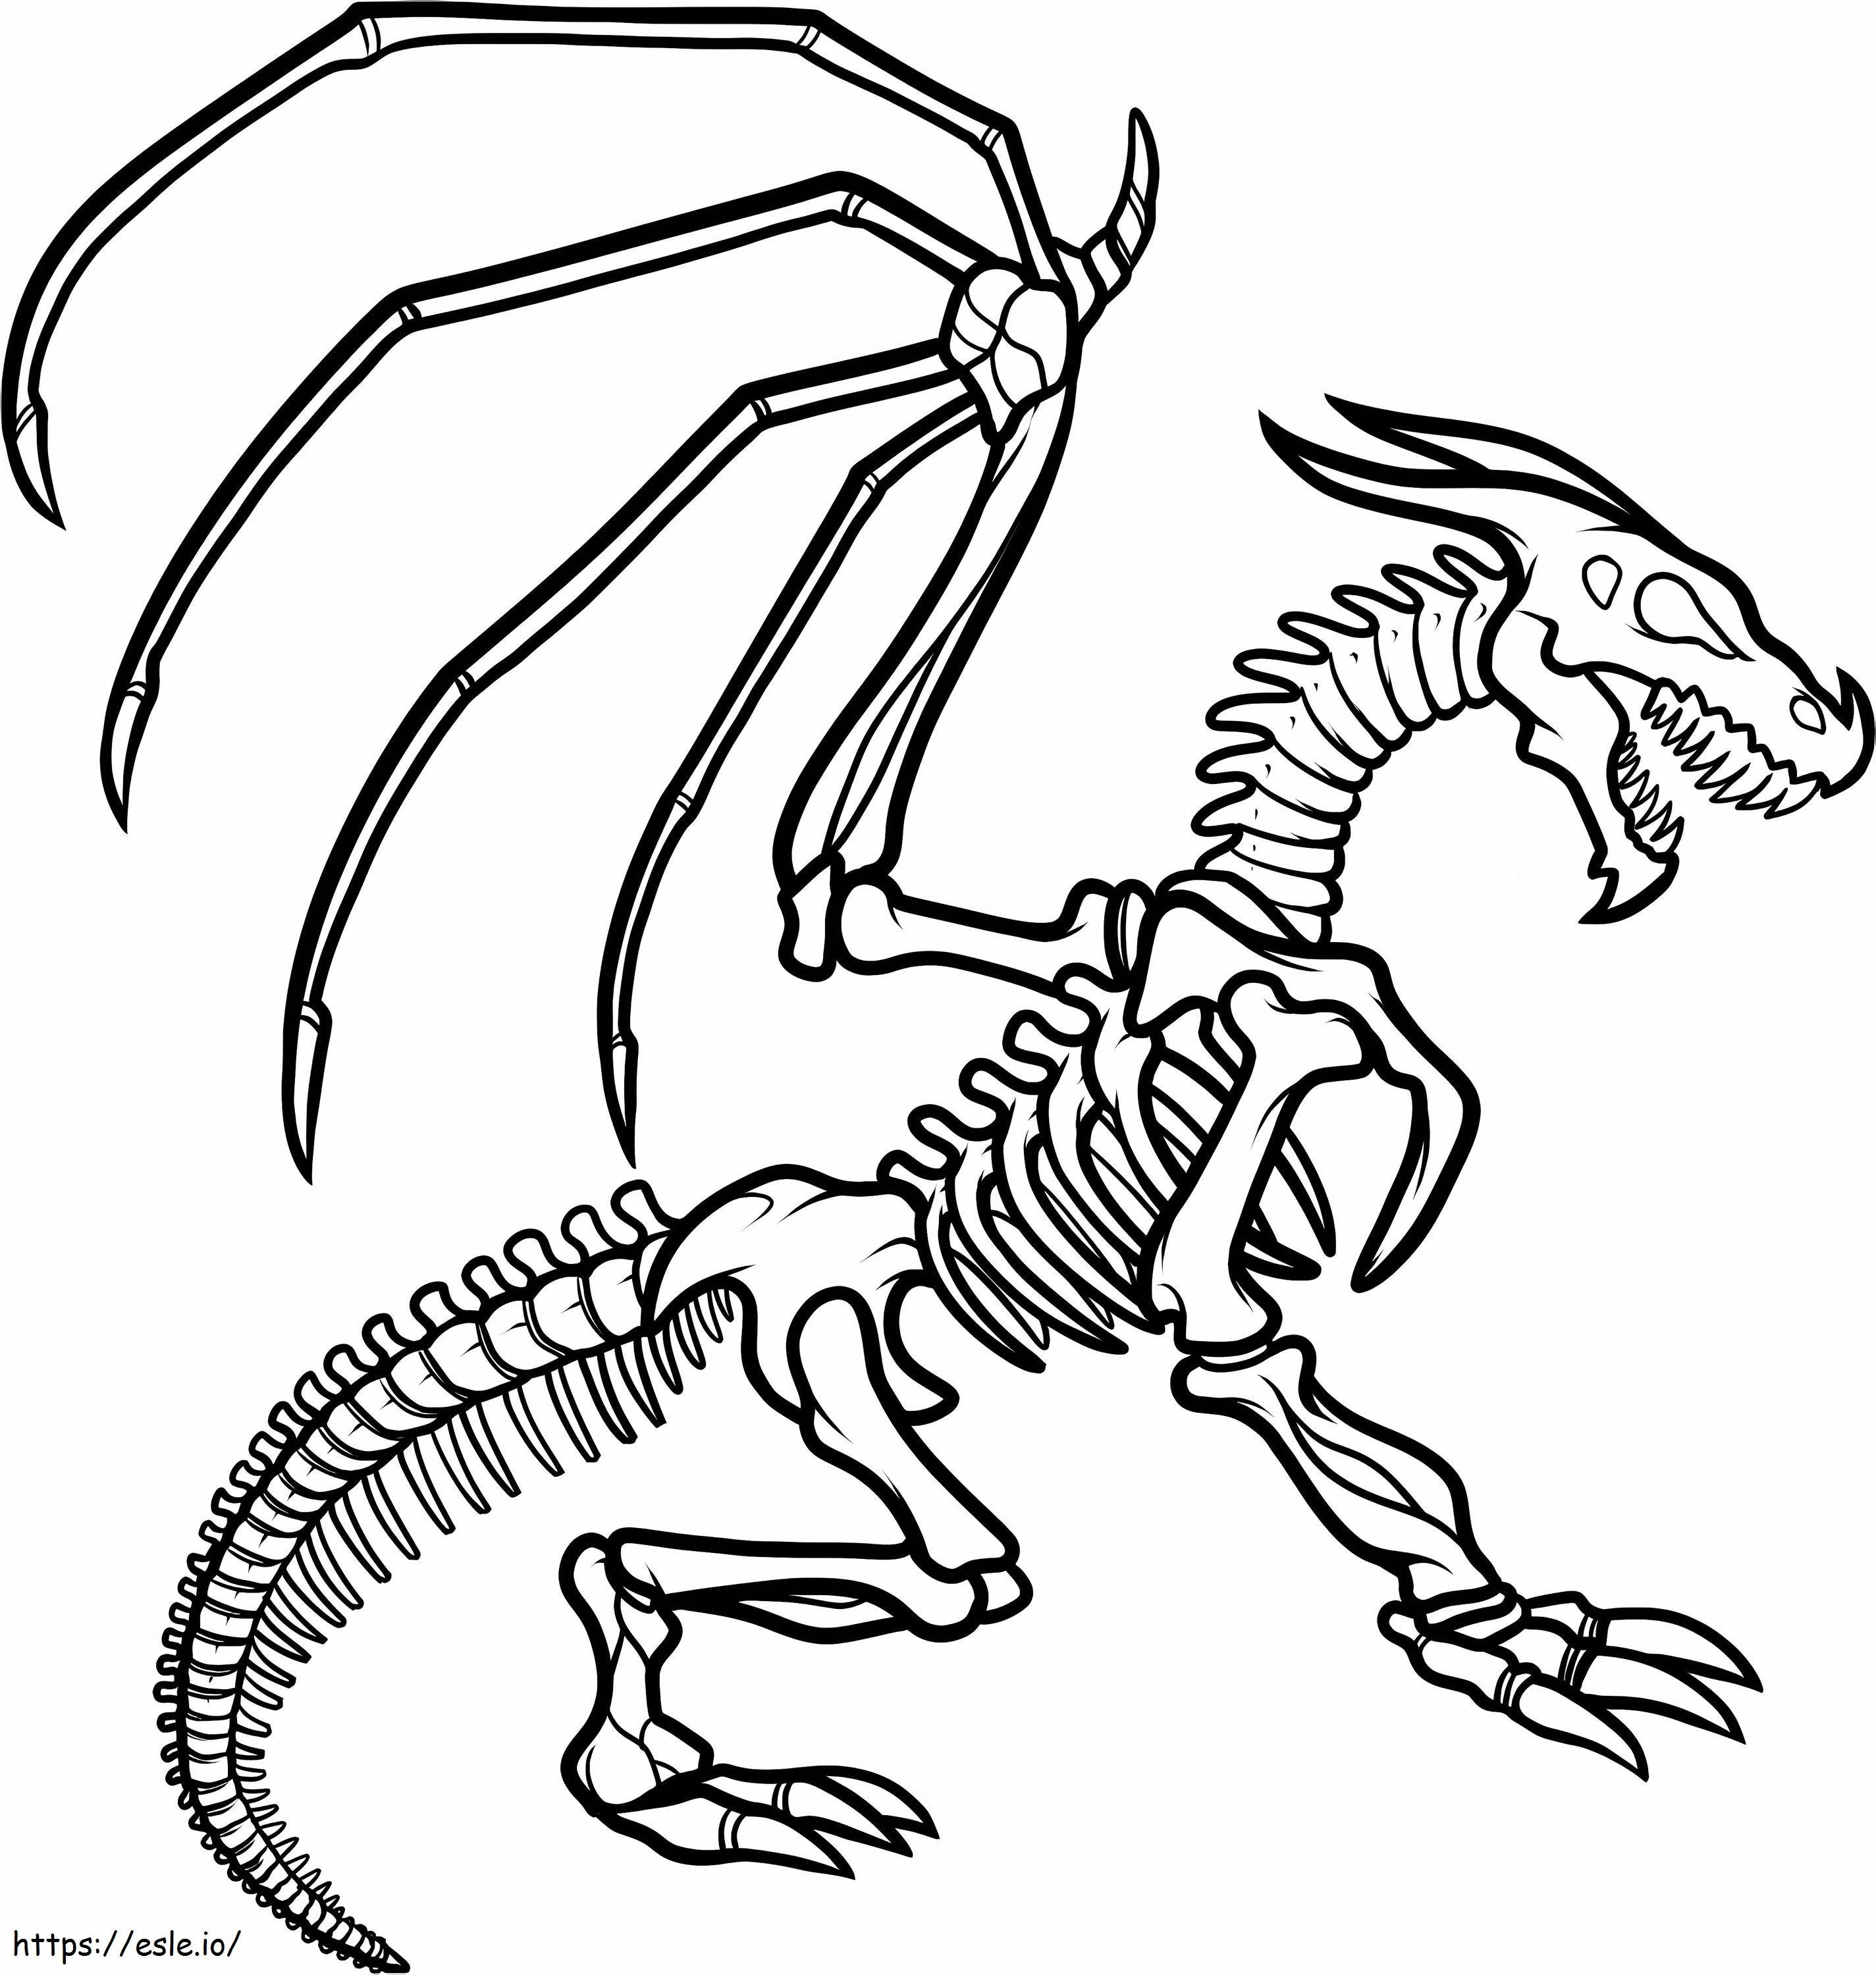 Coloriage 1547520862 Préscolaire Comment dessiner un squelette de dragon Squelette de dragon par Ilovepacsterandclyde D8Jkzcq à imprimer dessin